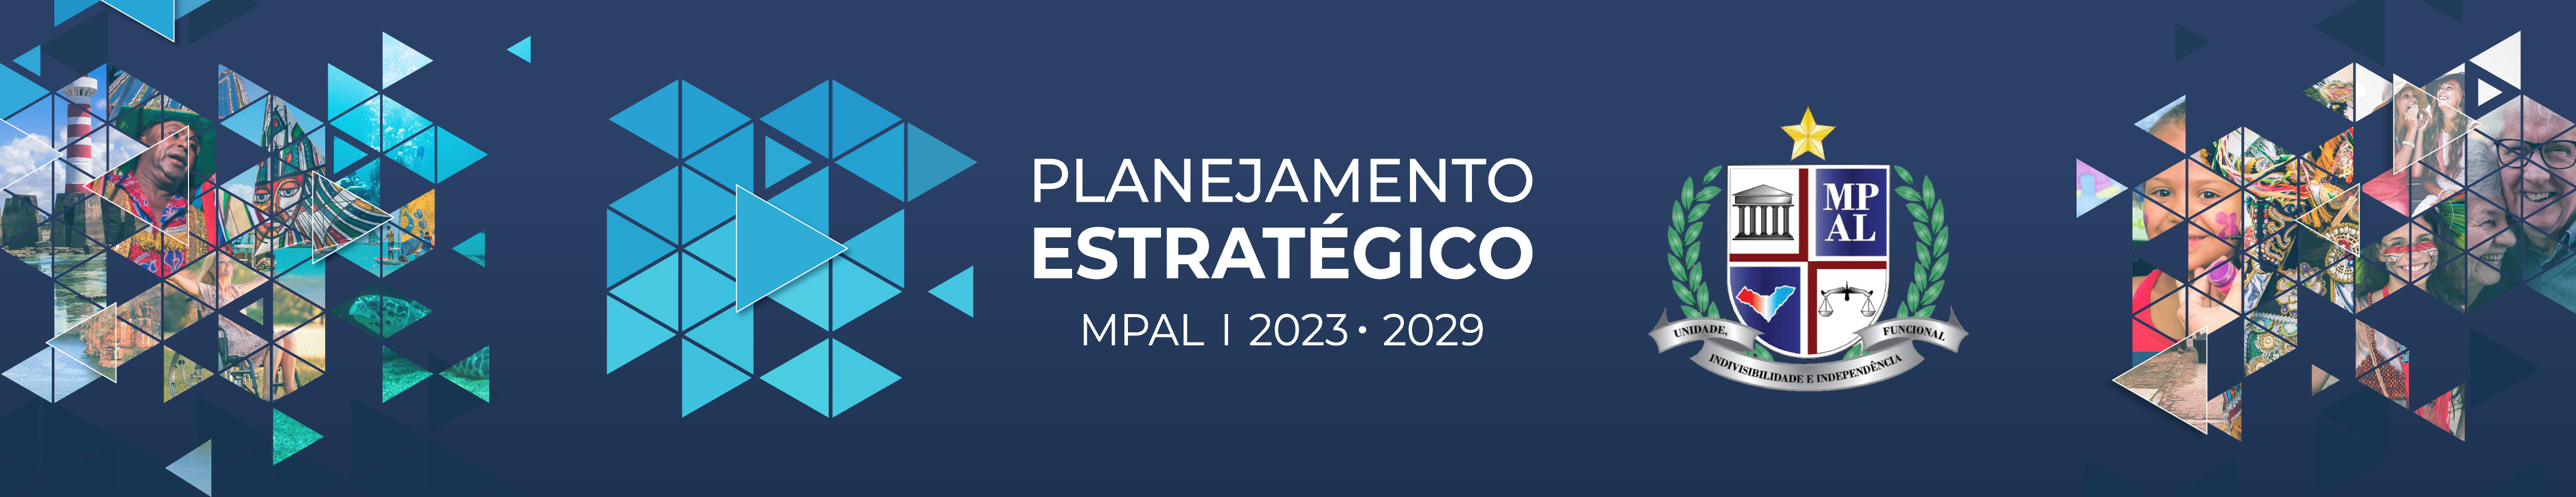 Planejamento Estratégico Institucional 2023-2029 | MPAL